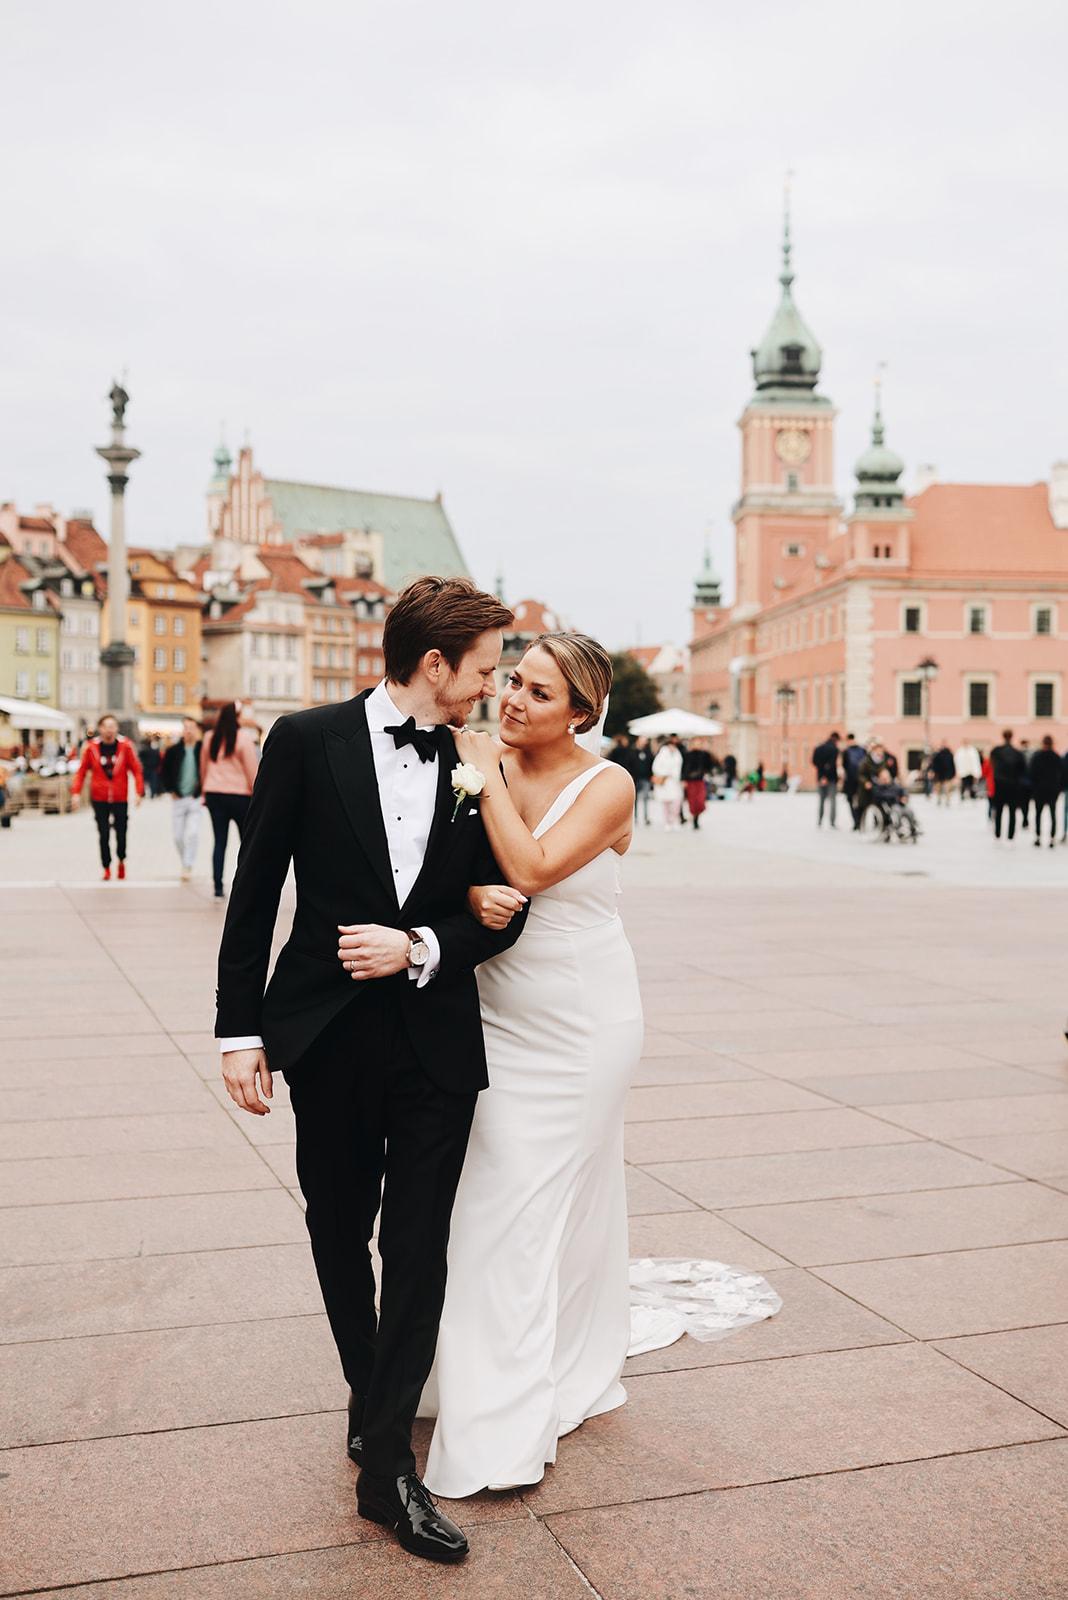 Ślub w Polsce - jak go zaplanować mieszkając zagranicą | Bogna Bojanowska - wedding planner